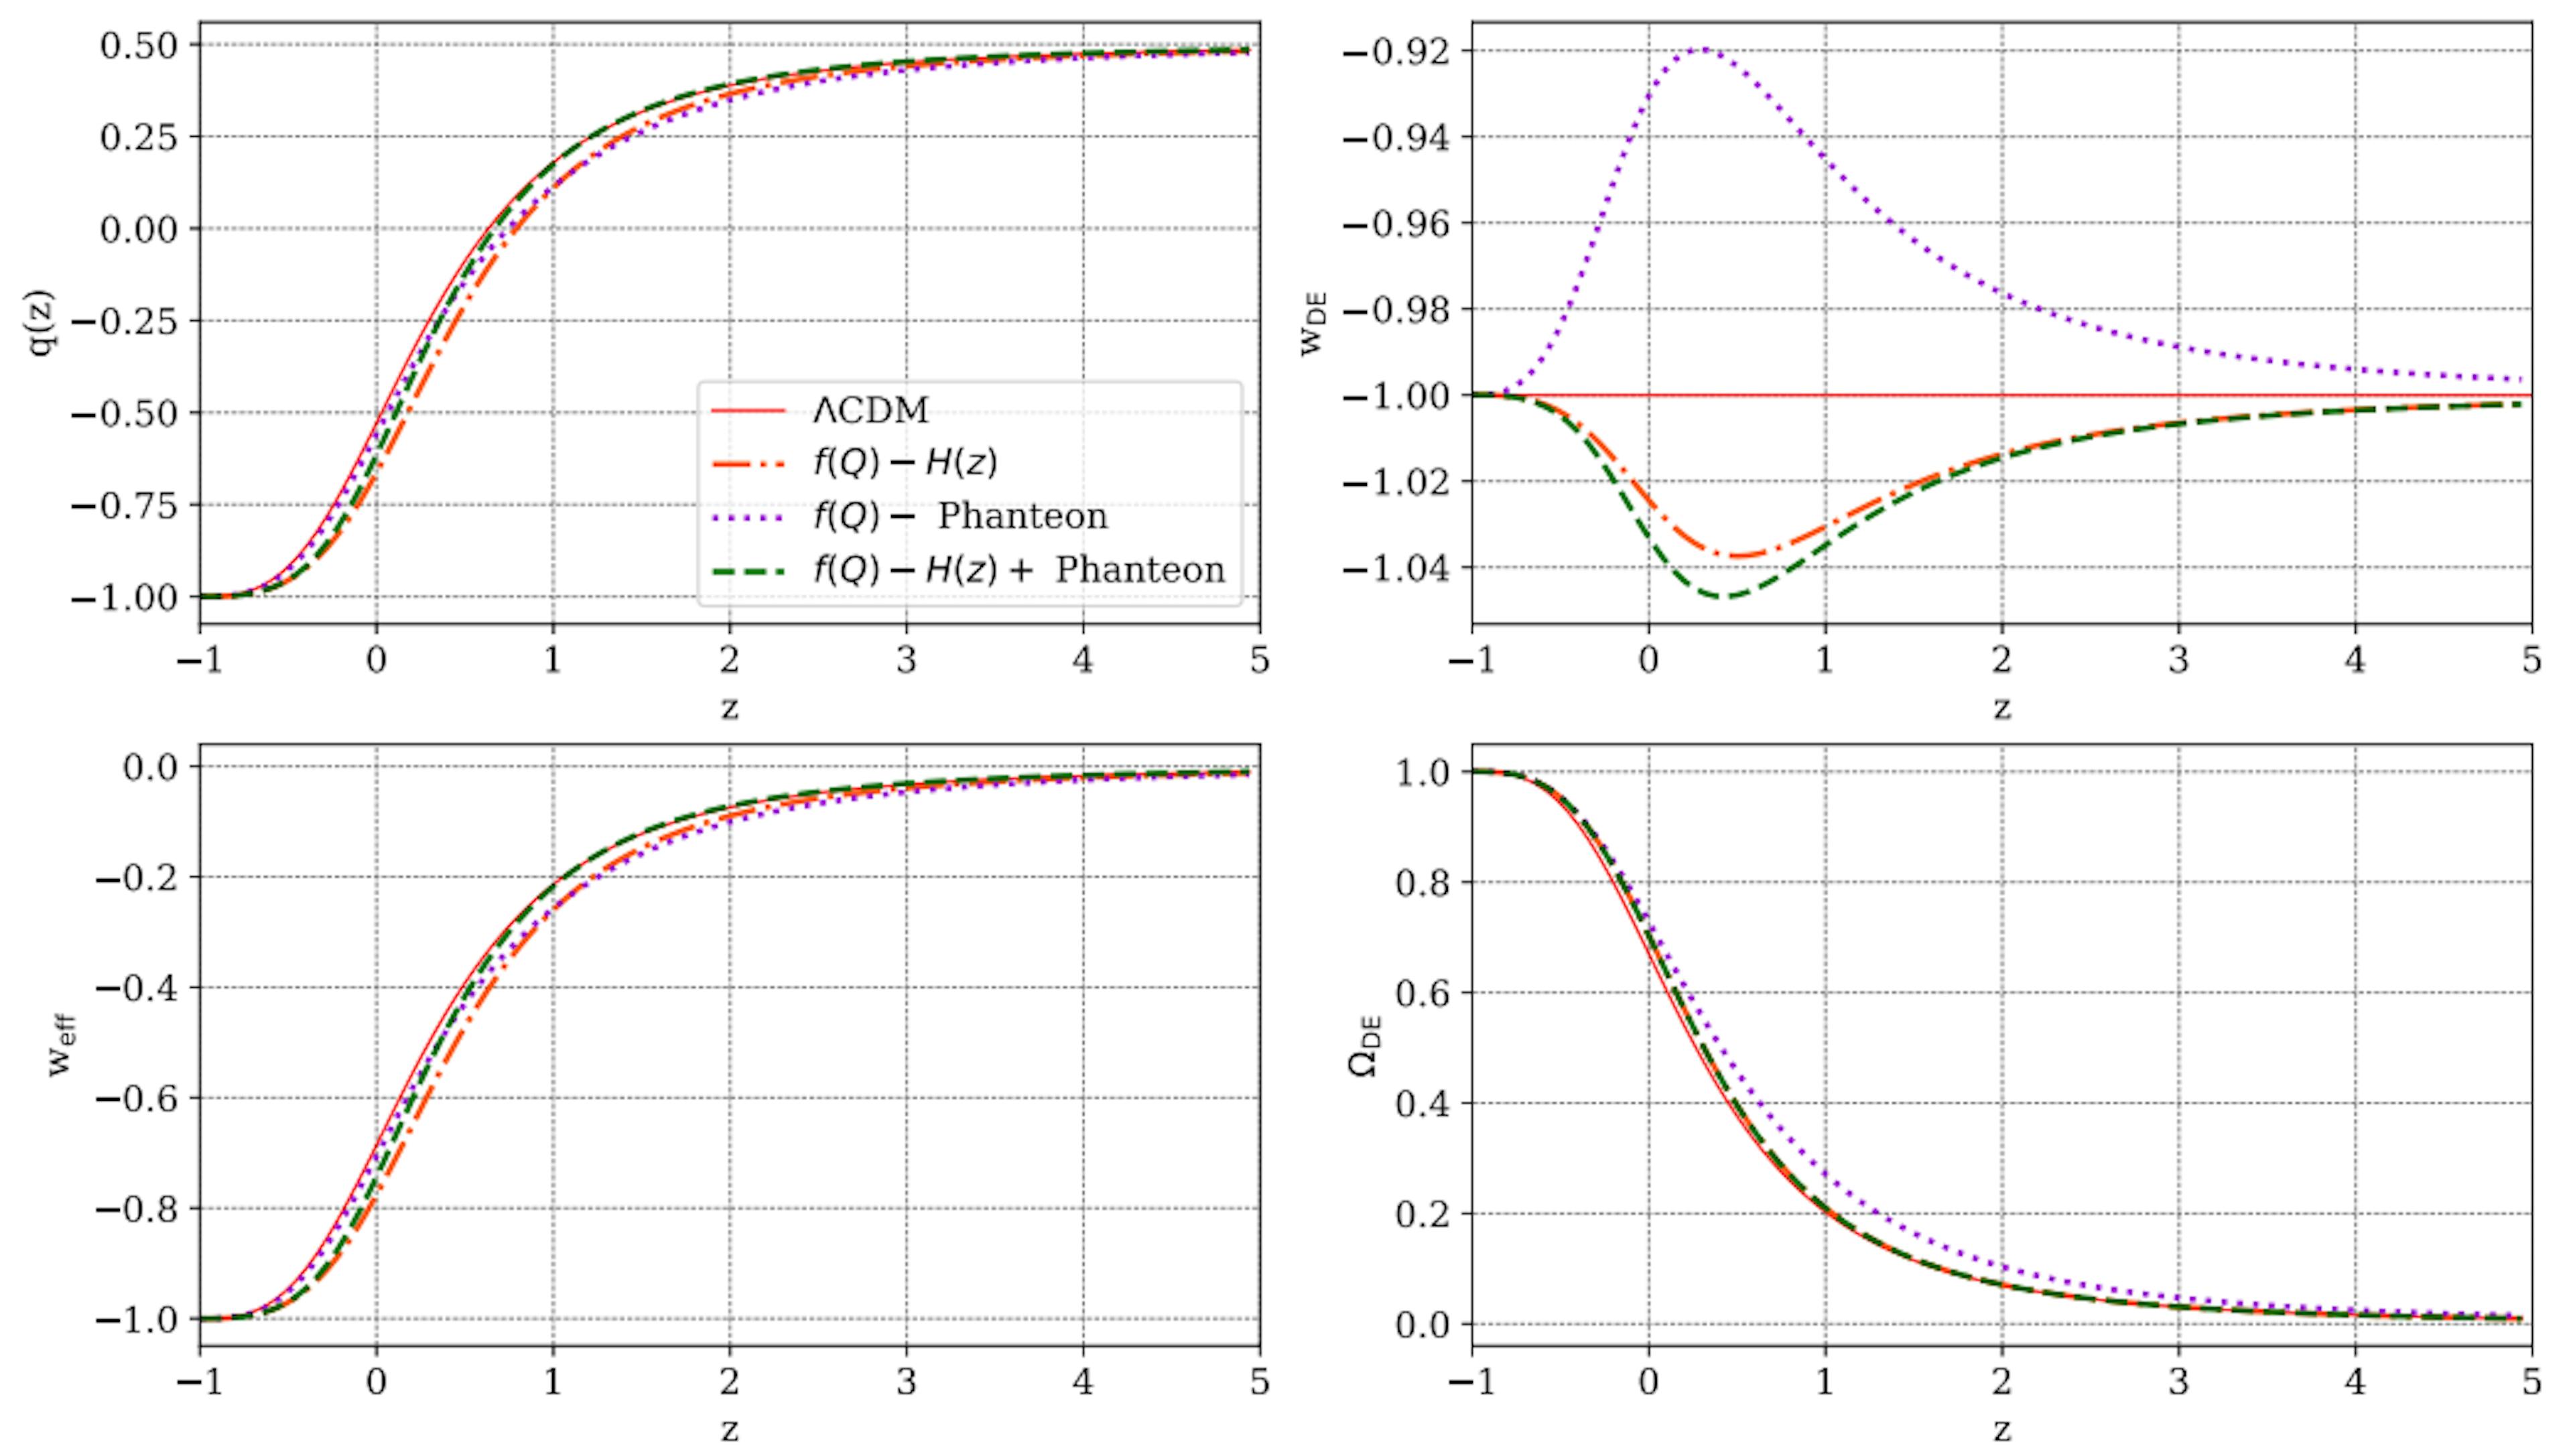 Figura 7: Evolução de alguns parâmetros cosmológicos versus redshift, z, conforme previsto para o modelo f(Q) apresentado neste trabalho, comparado com as previsões ΛCDM (linha vermelha completa). Em cada painel, as linhas laranja pontilhada, violeta pontilhada e verde tracejada são o resultado das restrições de parâmetros das amostras H(z), Pantheon e H(z)+ Pantheon, respectivamente.